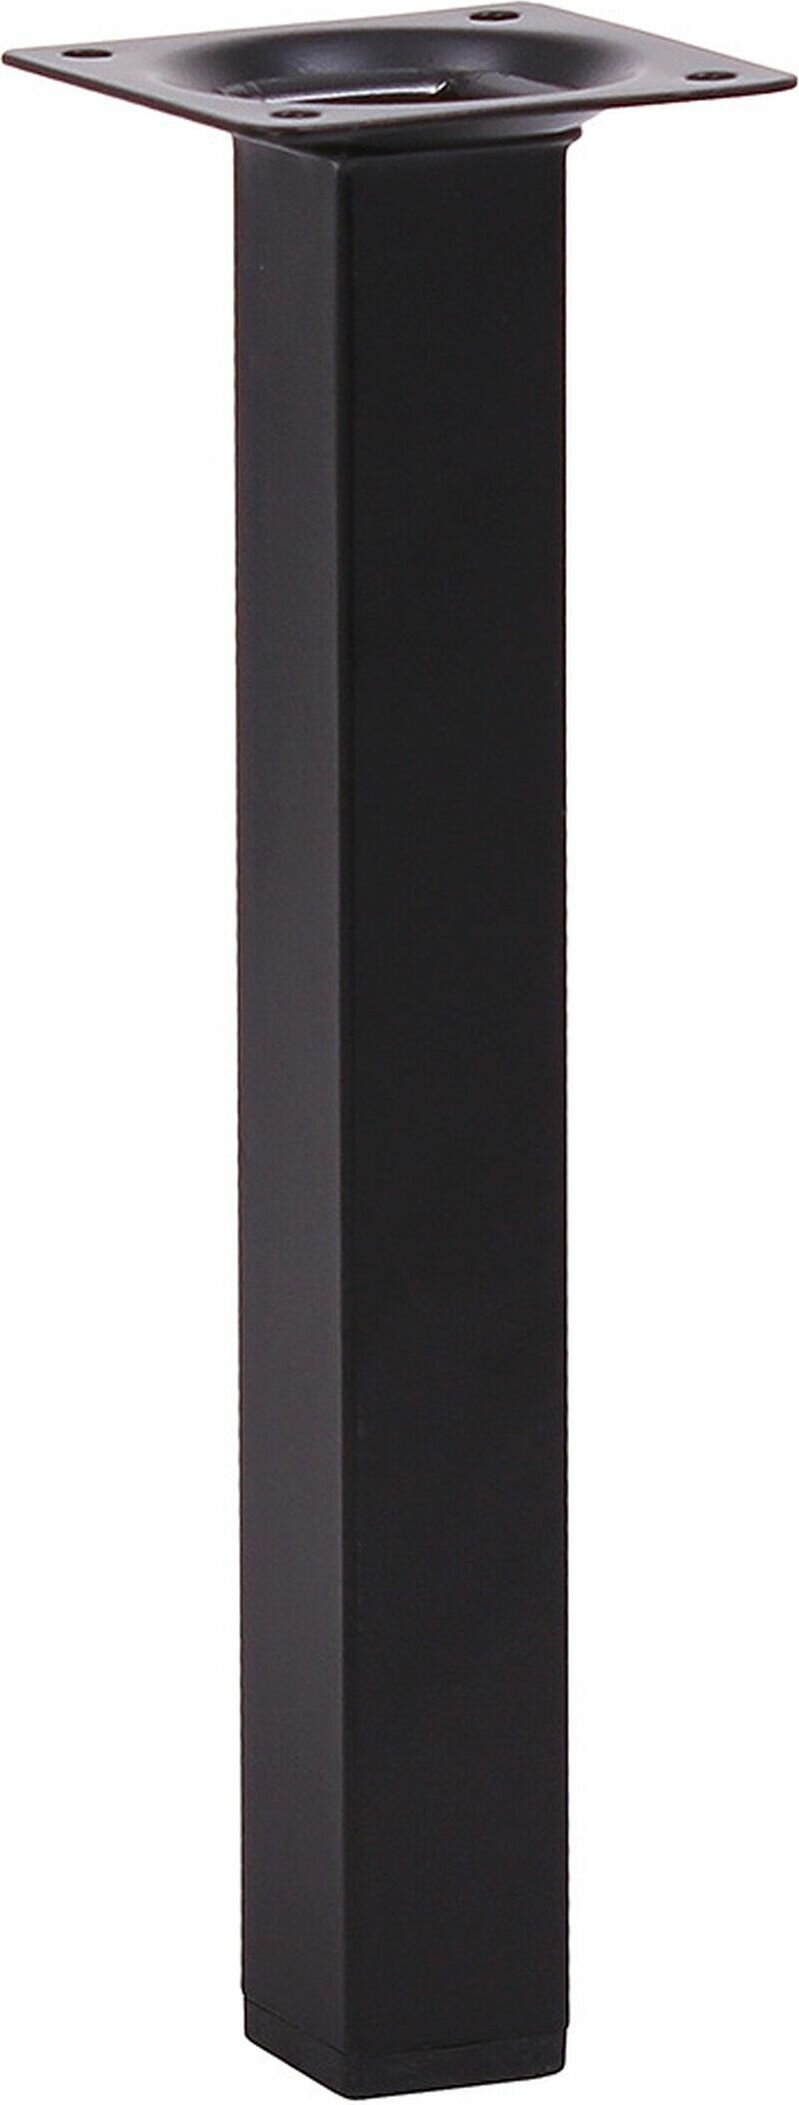 Мебельная ножка Larvij металлическая черная 20 см